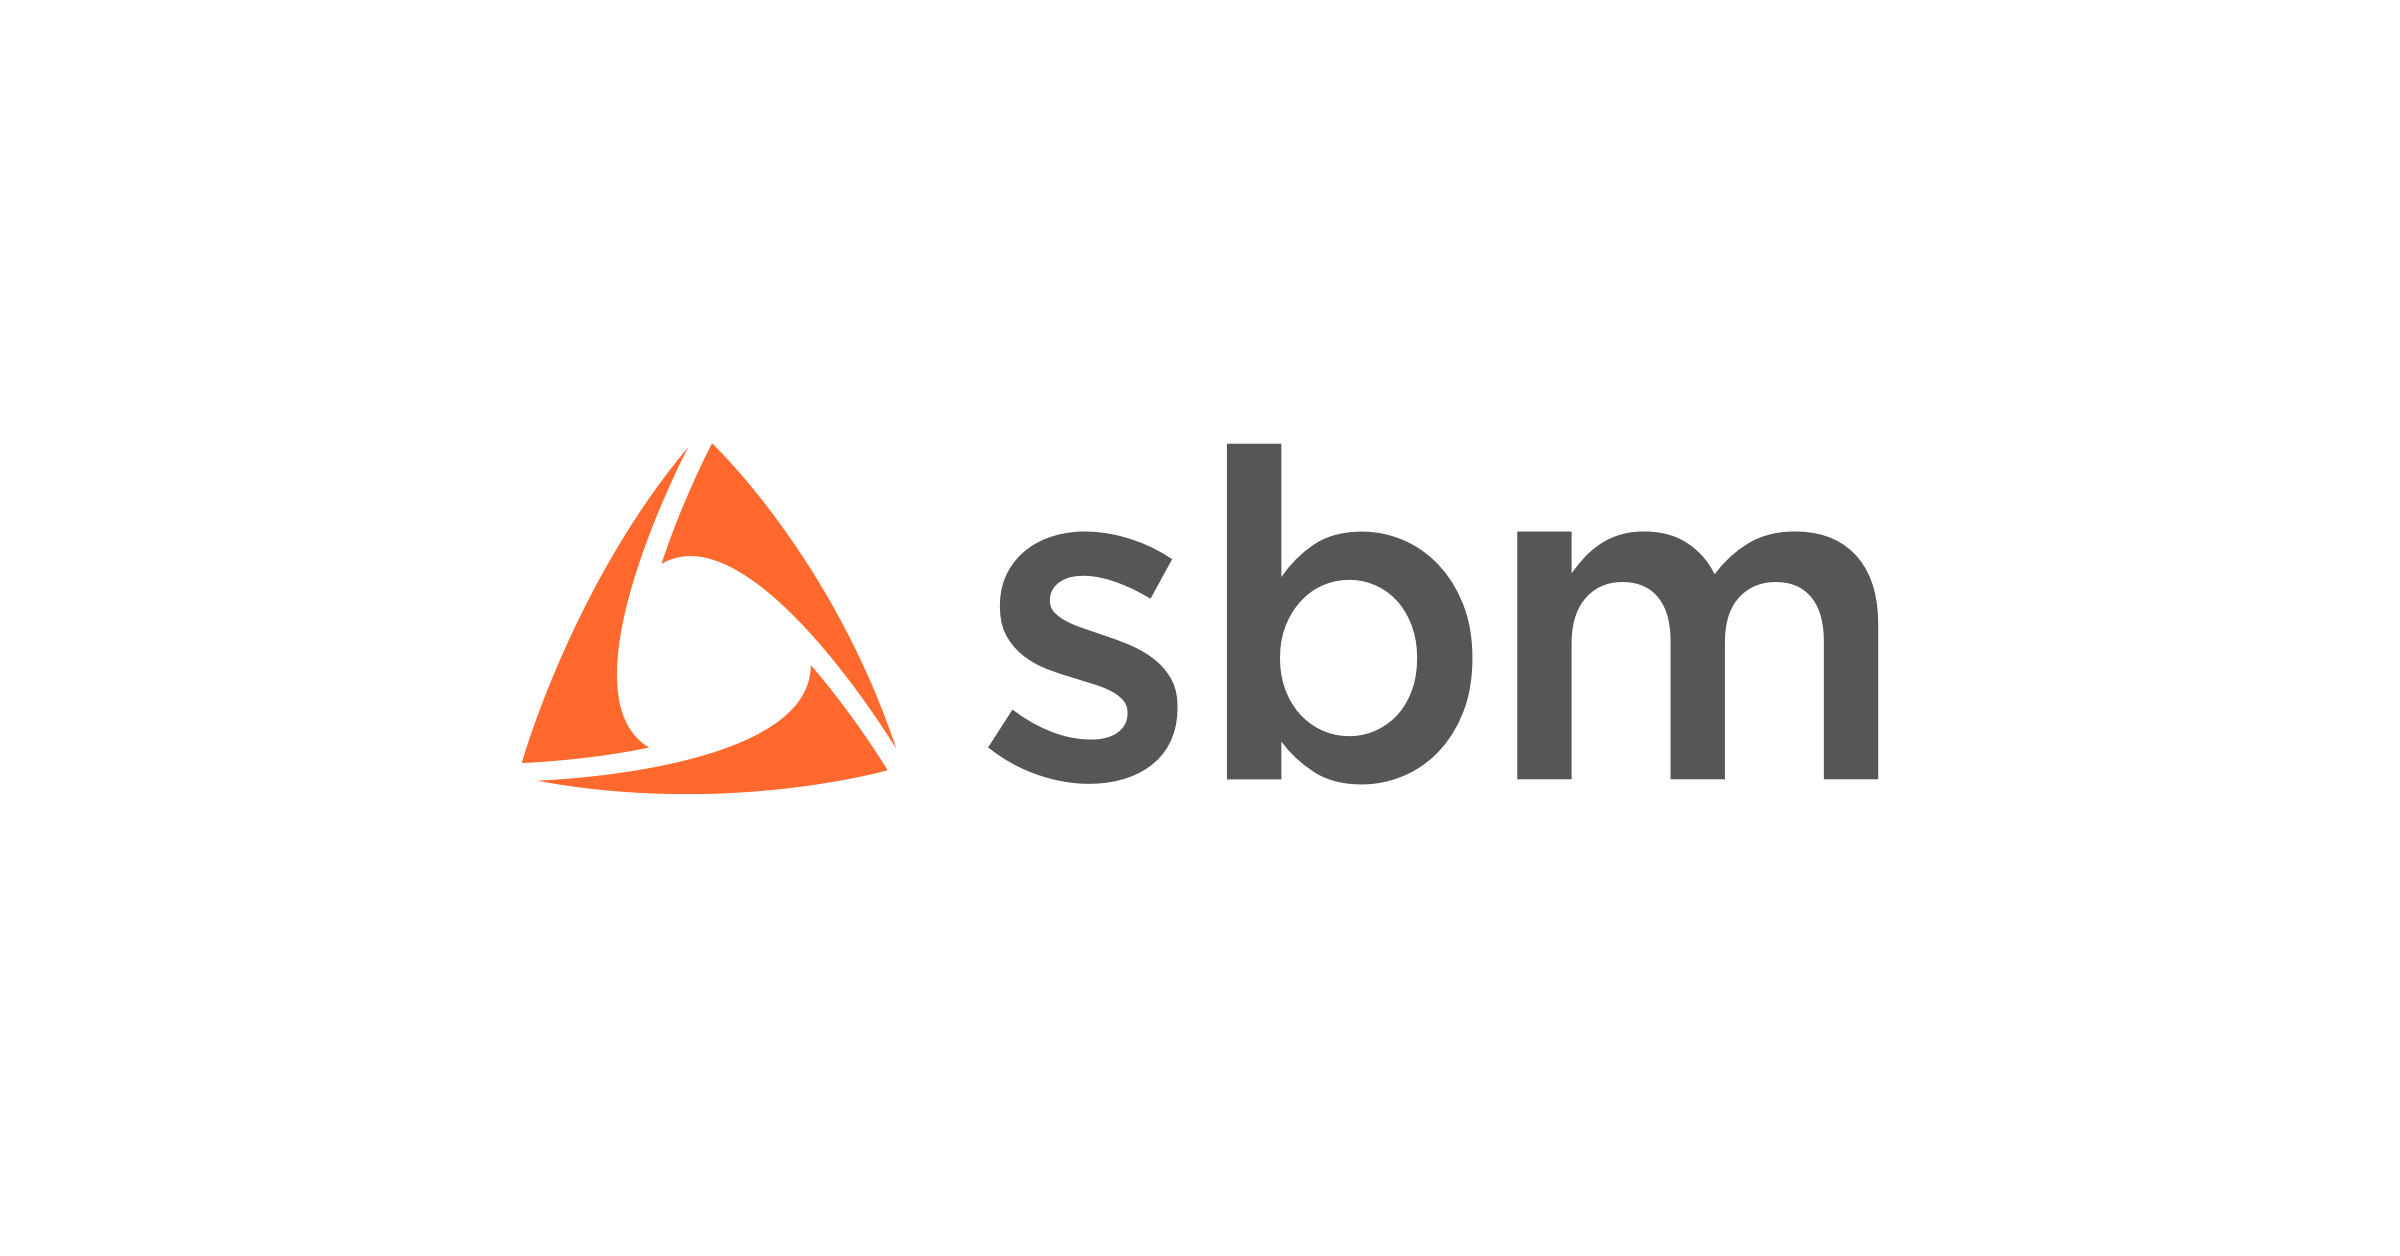 SBM Letter Logo Design on White Background. SBM Creative Circle Letter Logo  Stock Vector - Illustration of house, luxury: 254288729